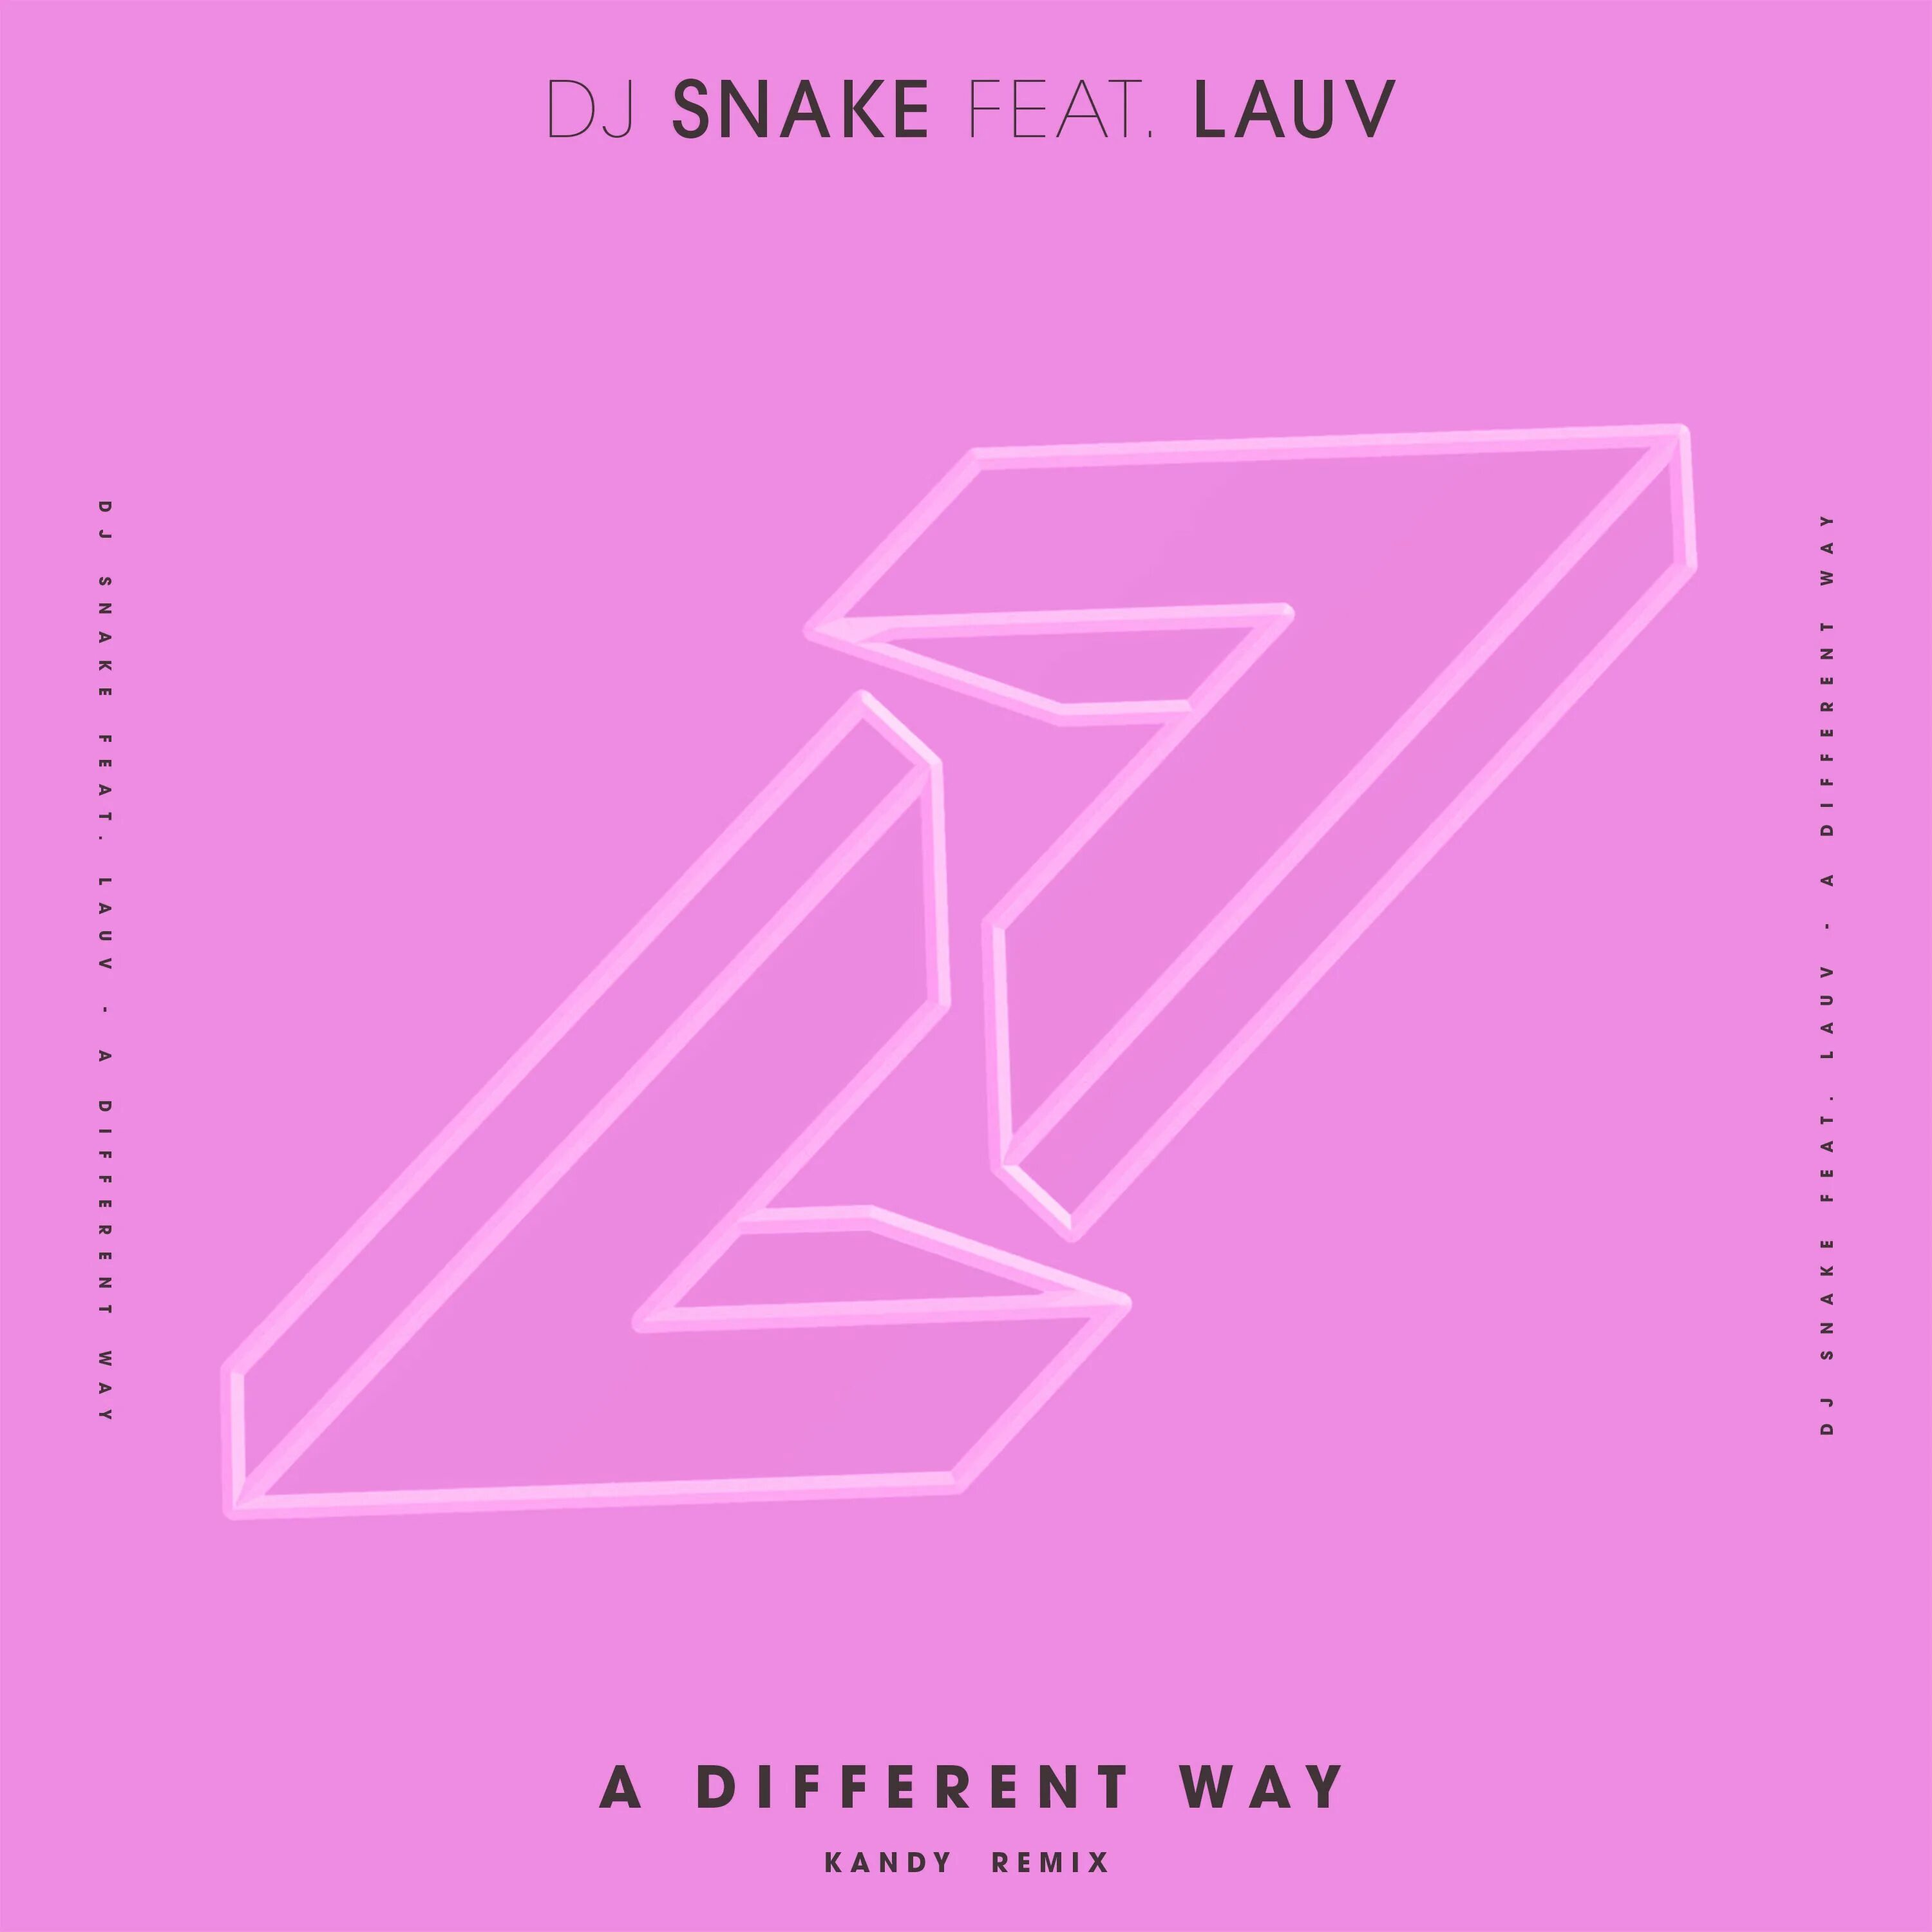 Dj snake feat. A different way DJ Snake/Lauv. DJ Snake Lauv. DJ Snake feat. Lauv - a different way. DJ Snake Remix.